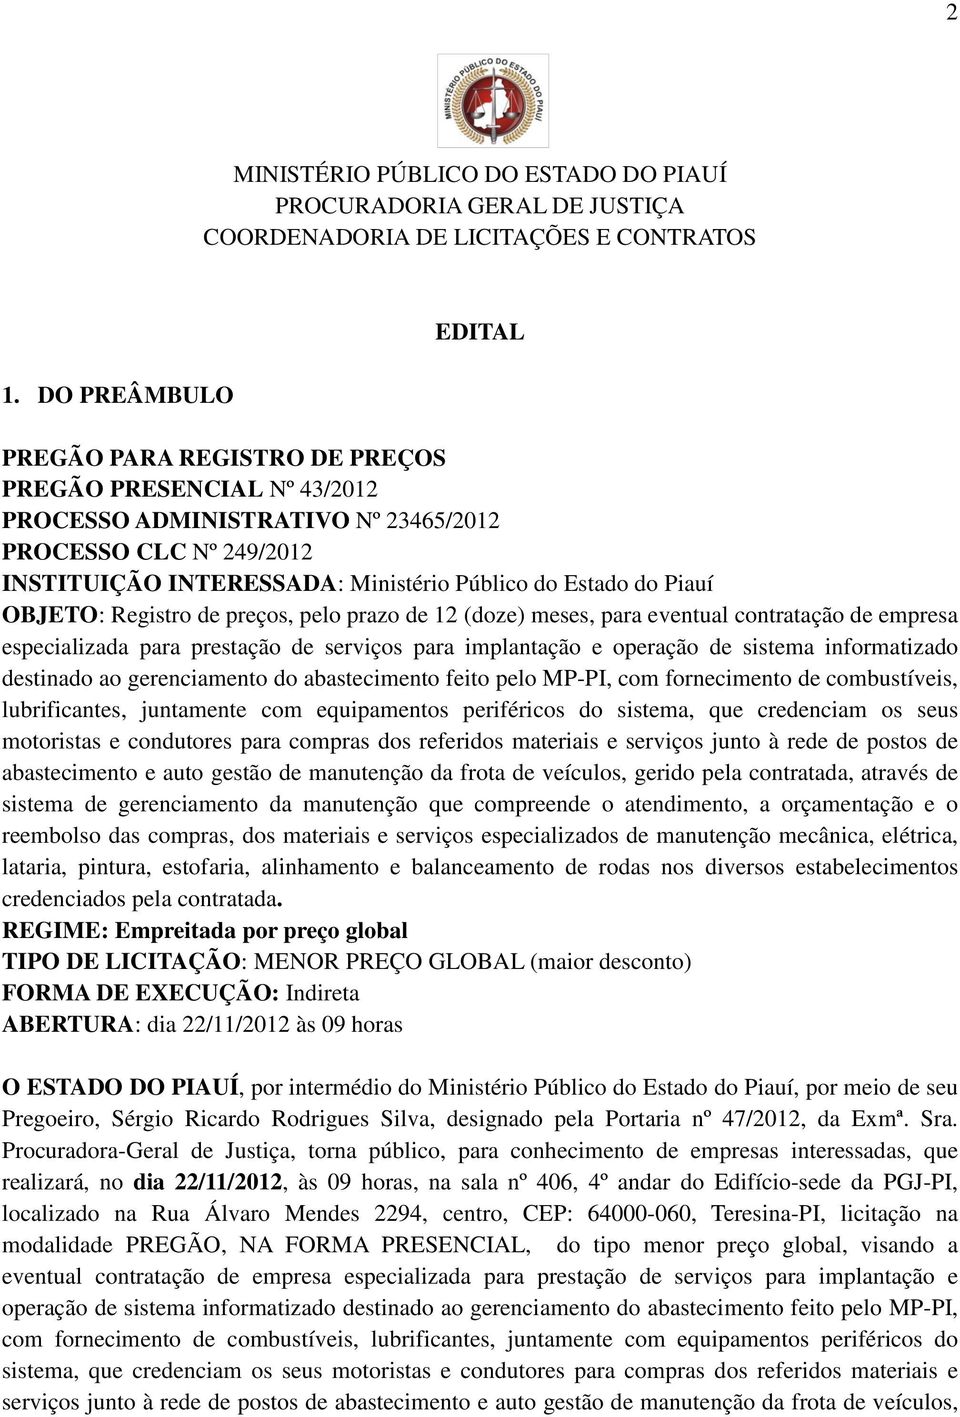 Piauí OBJETO: Registro de preços, pelo prazo de 12 (doze) meses, para eventual contratação de empresa especializada para prestação de serviços para implantação e operação de sistema informatizado